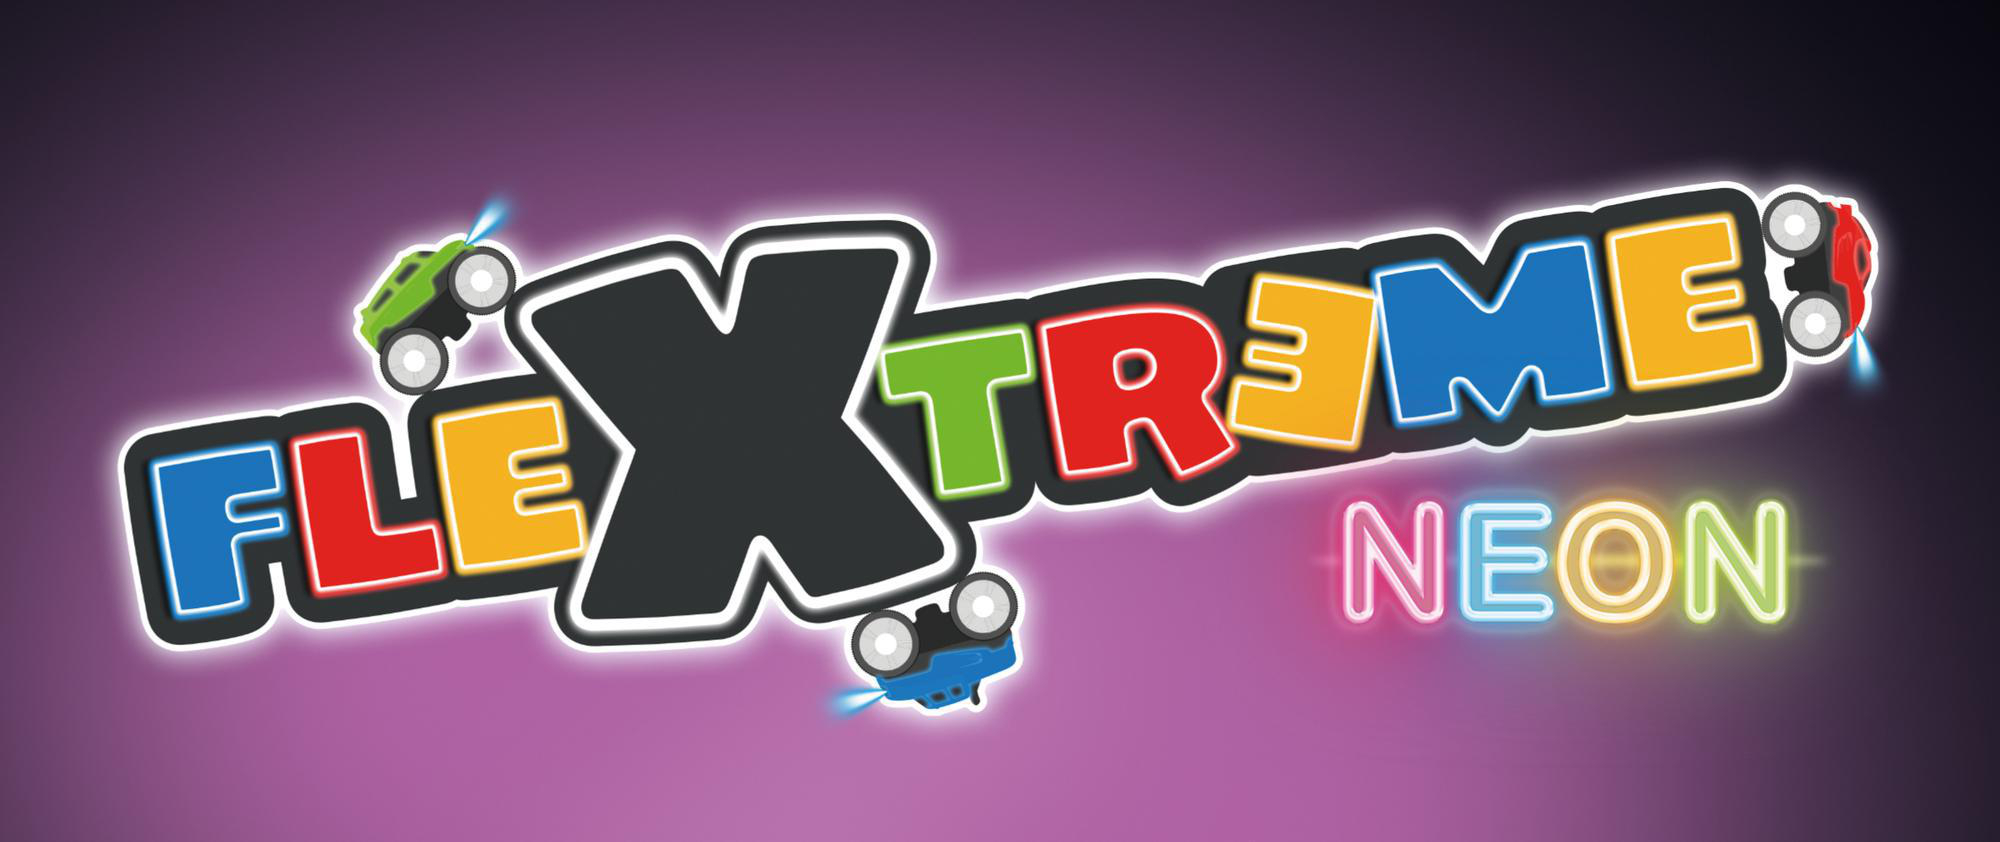 FleXtreme Set Mehrfarbig (300) Spielzeugrennbahn, Neon Rennbahn SMOBY